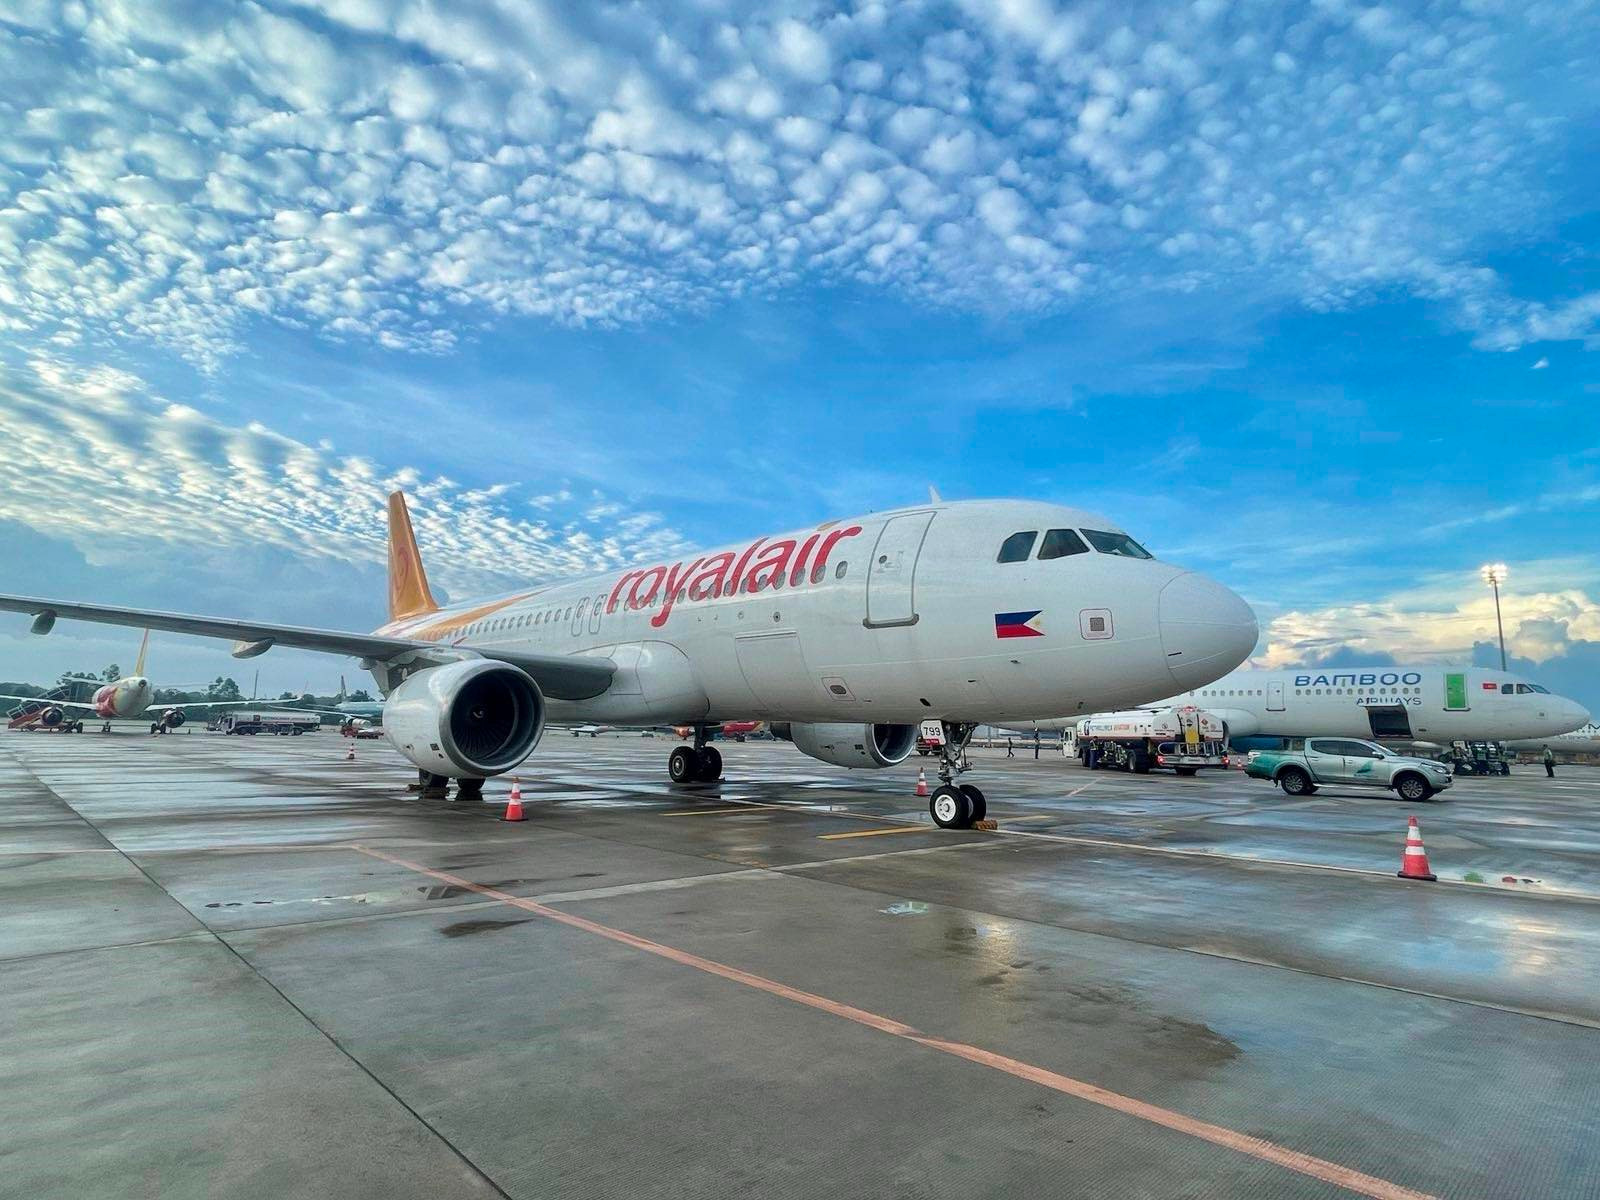 Bamboo Airways đón thêm chiếc máy bay thuê ướt thứ 3 từ đầu năm đến nay, CEO tâm sự: “Bay nội địa chưa thể có lãi”